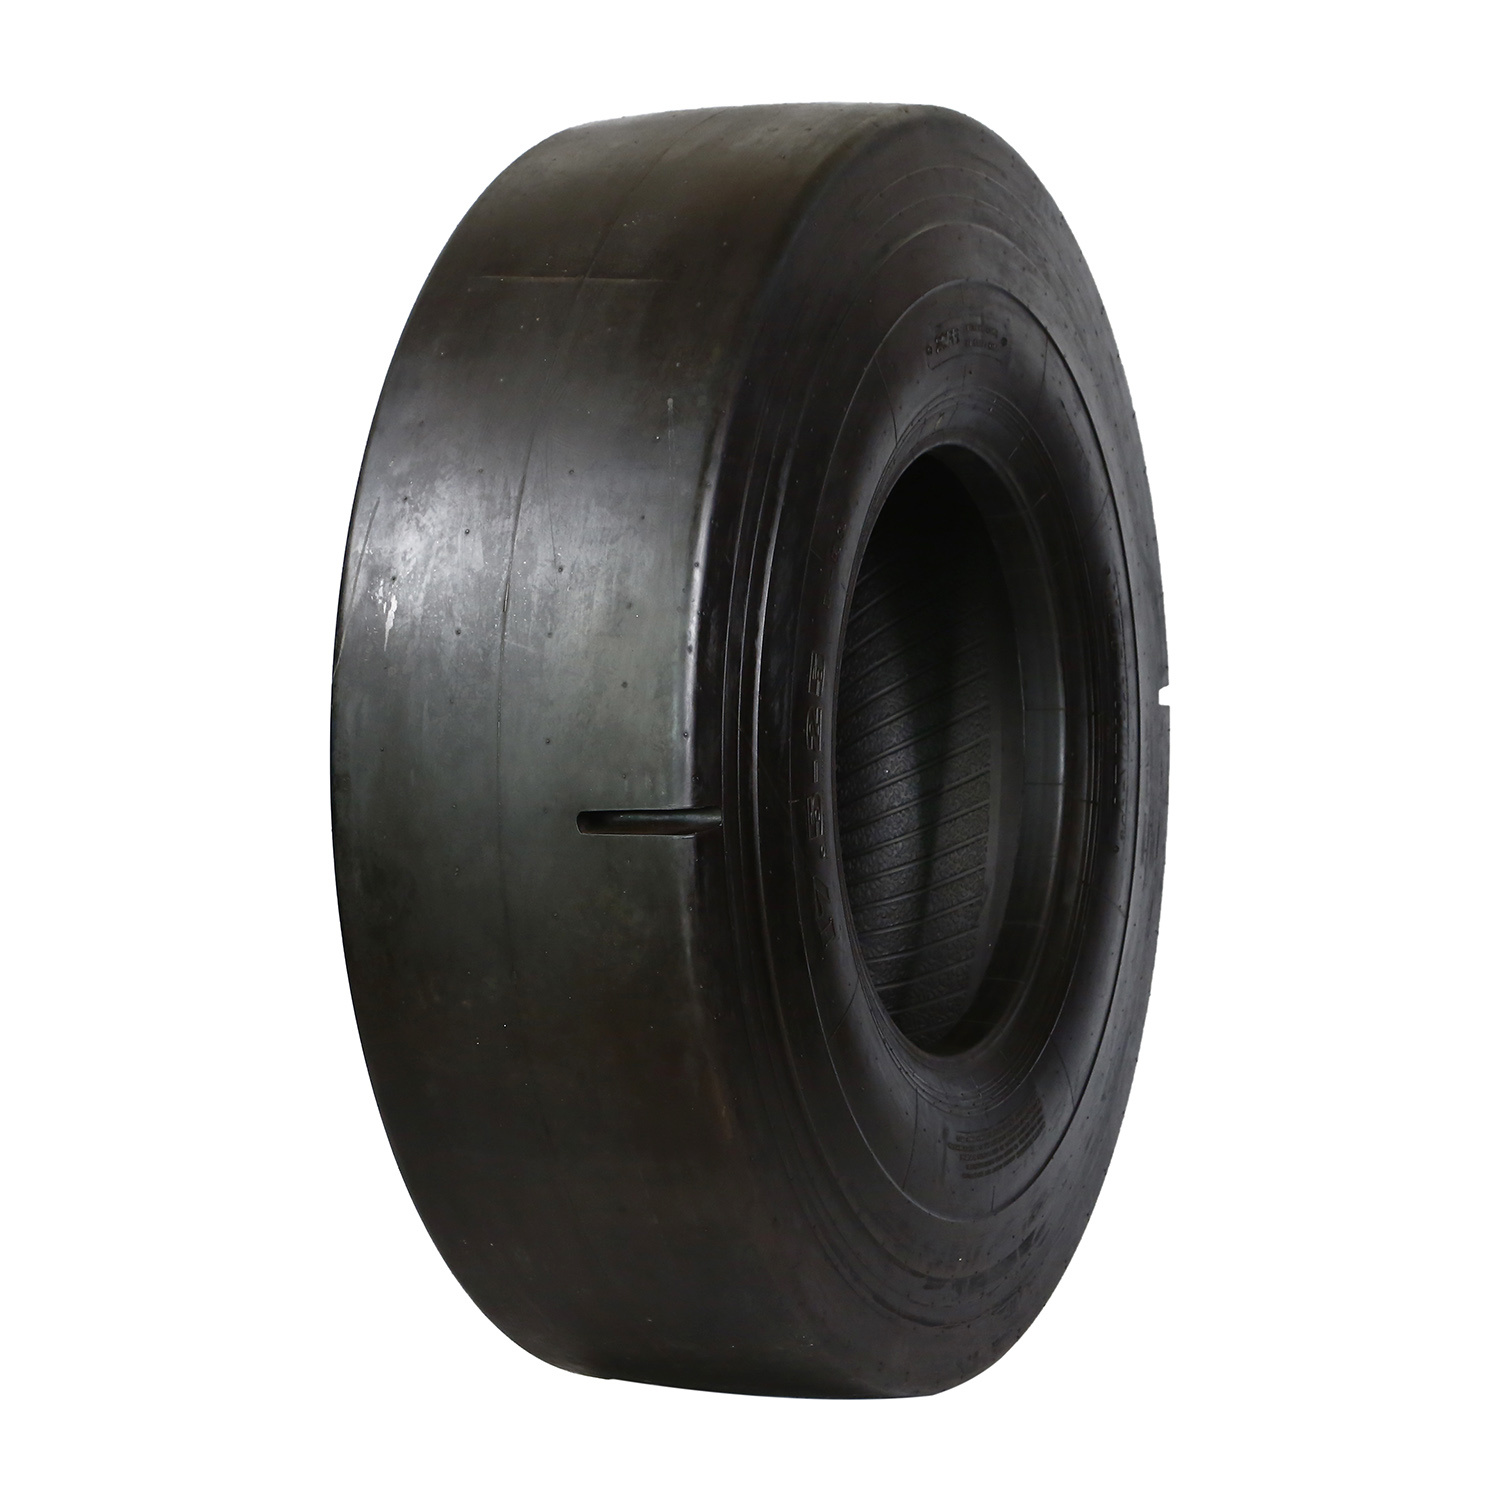 Pneumàtic OTR de patró L-5s d'alta qualitat per a pneumàtics miners amb la marca Top Trust